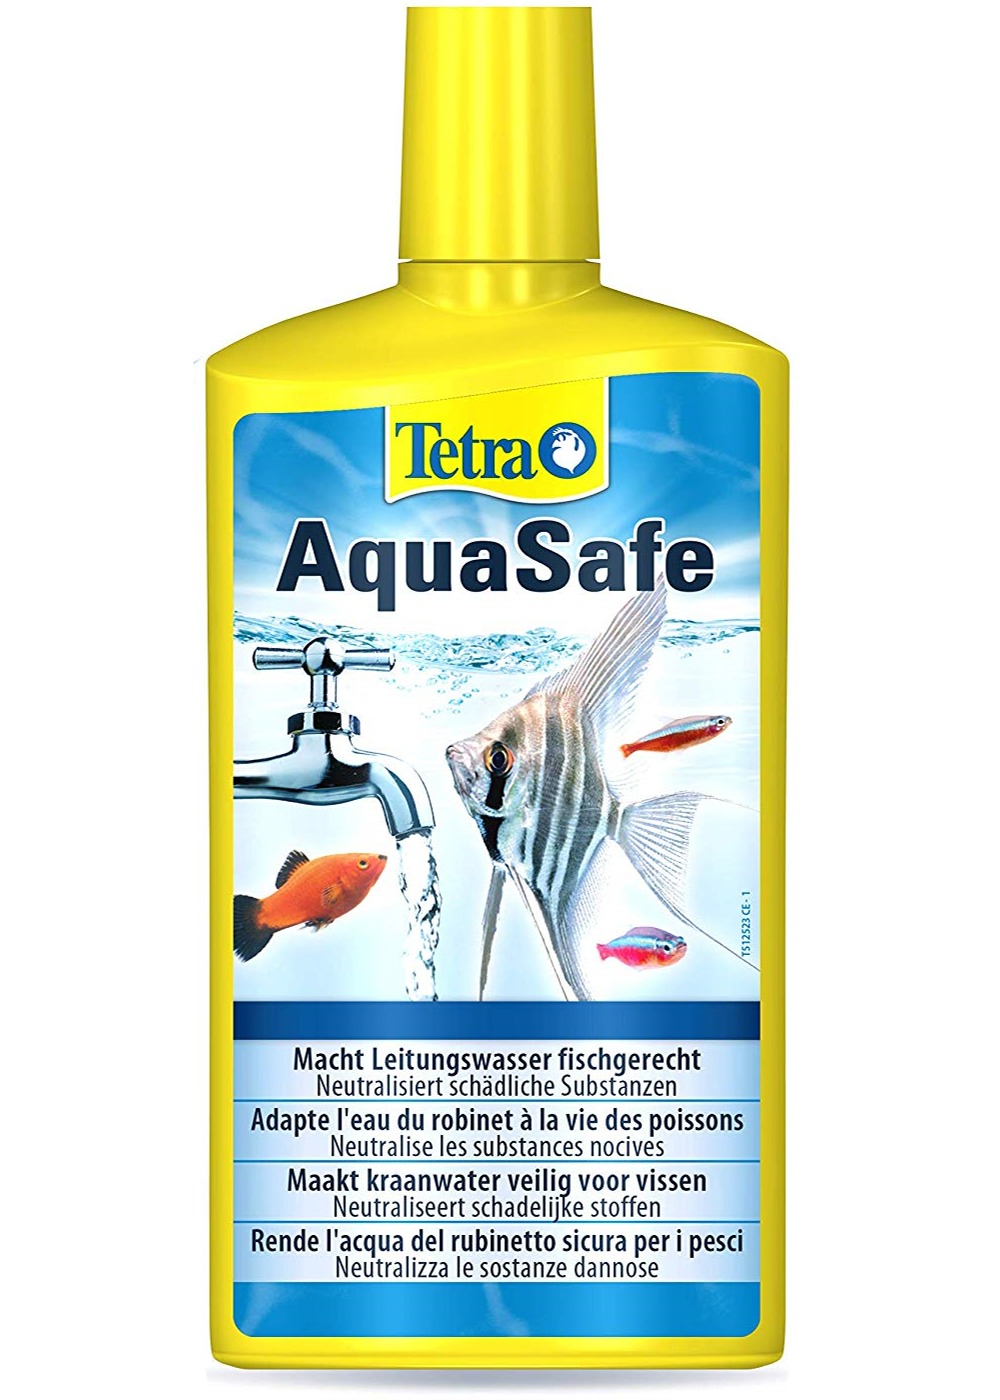 tetra-aquasafe-500-ml-transforme-instantanement-l-eau-du-robinet-en-une-eau-comme-a-l-etat-naturel-adaptee-aux-besoins-des-poissons